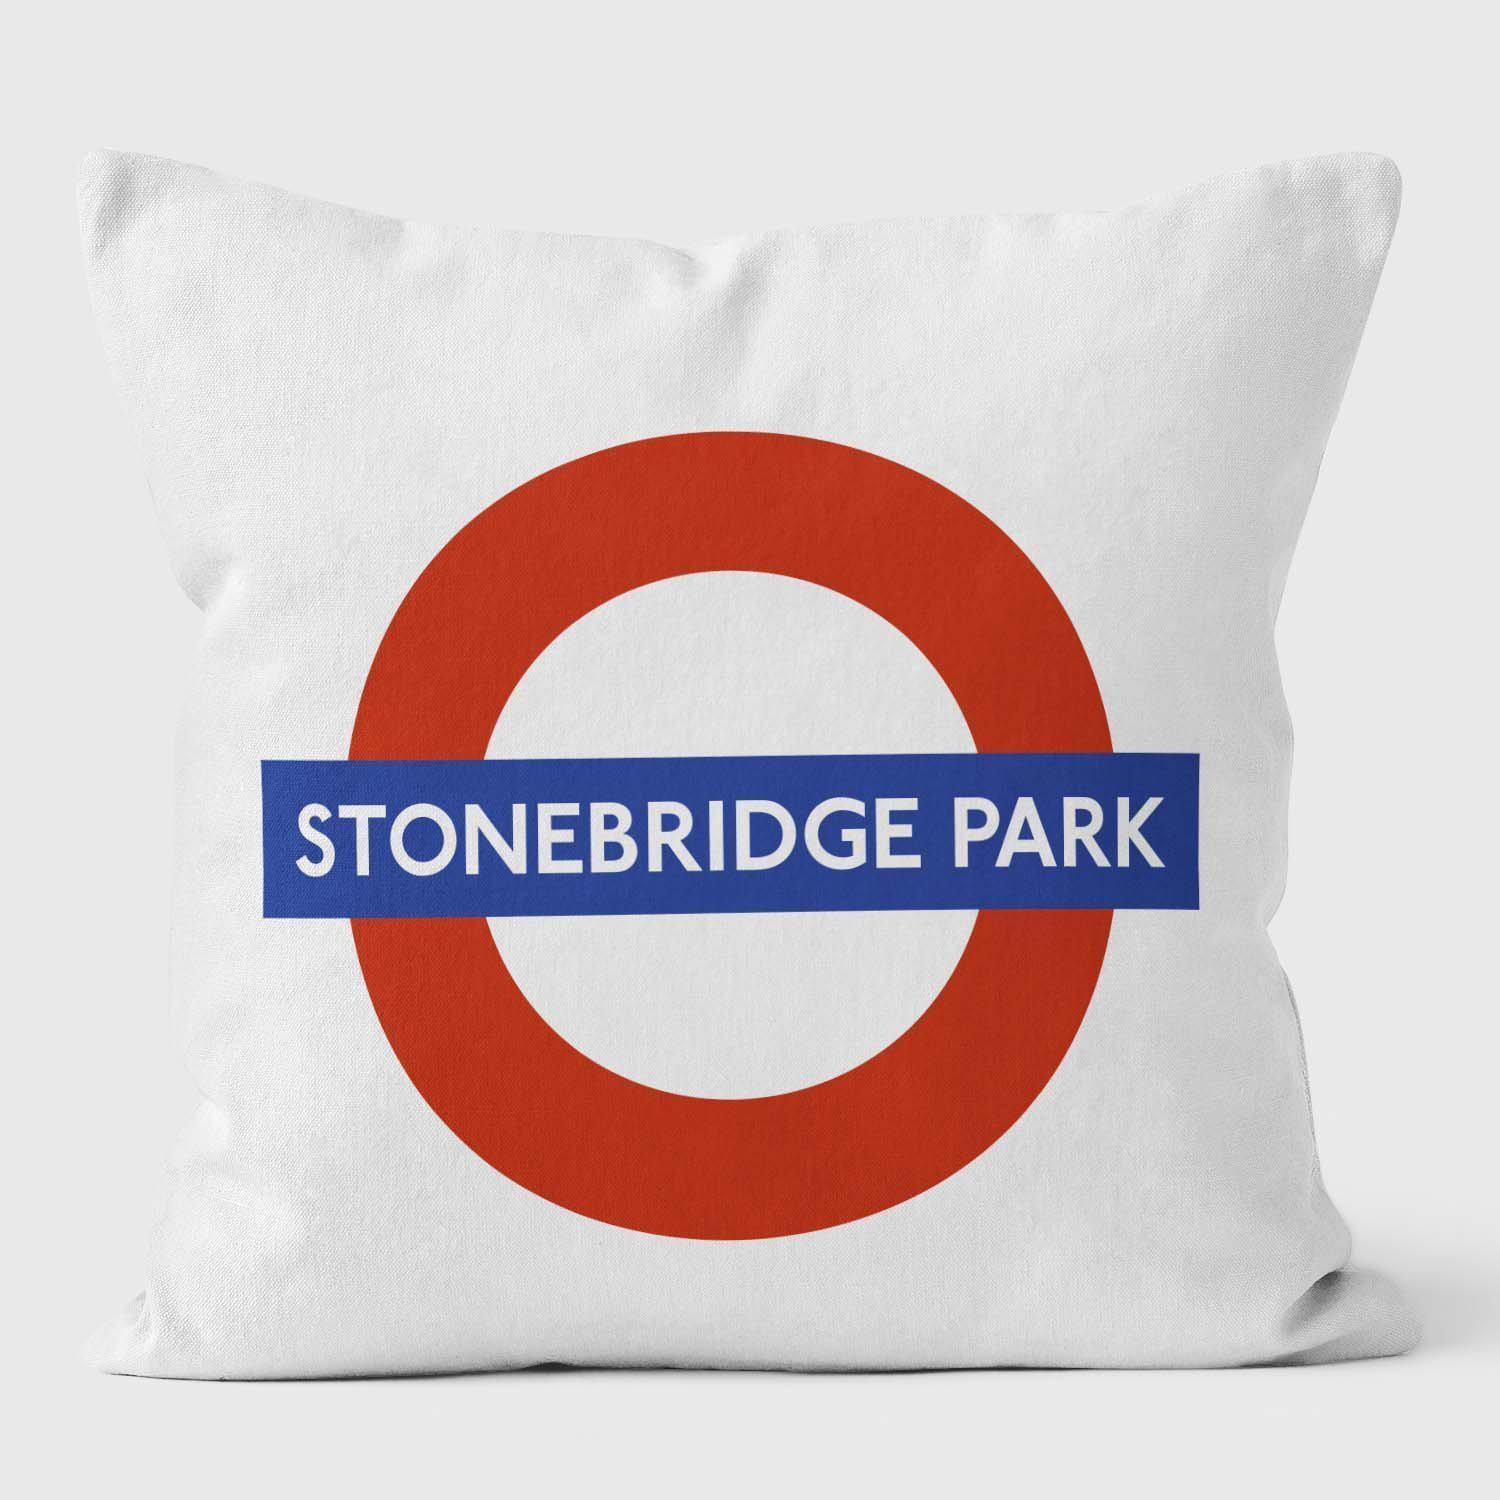 Stronebridge Park London Underground Tube Station Roundel Cushion - Handmade Cushions UK - WeLoveCushions